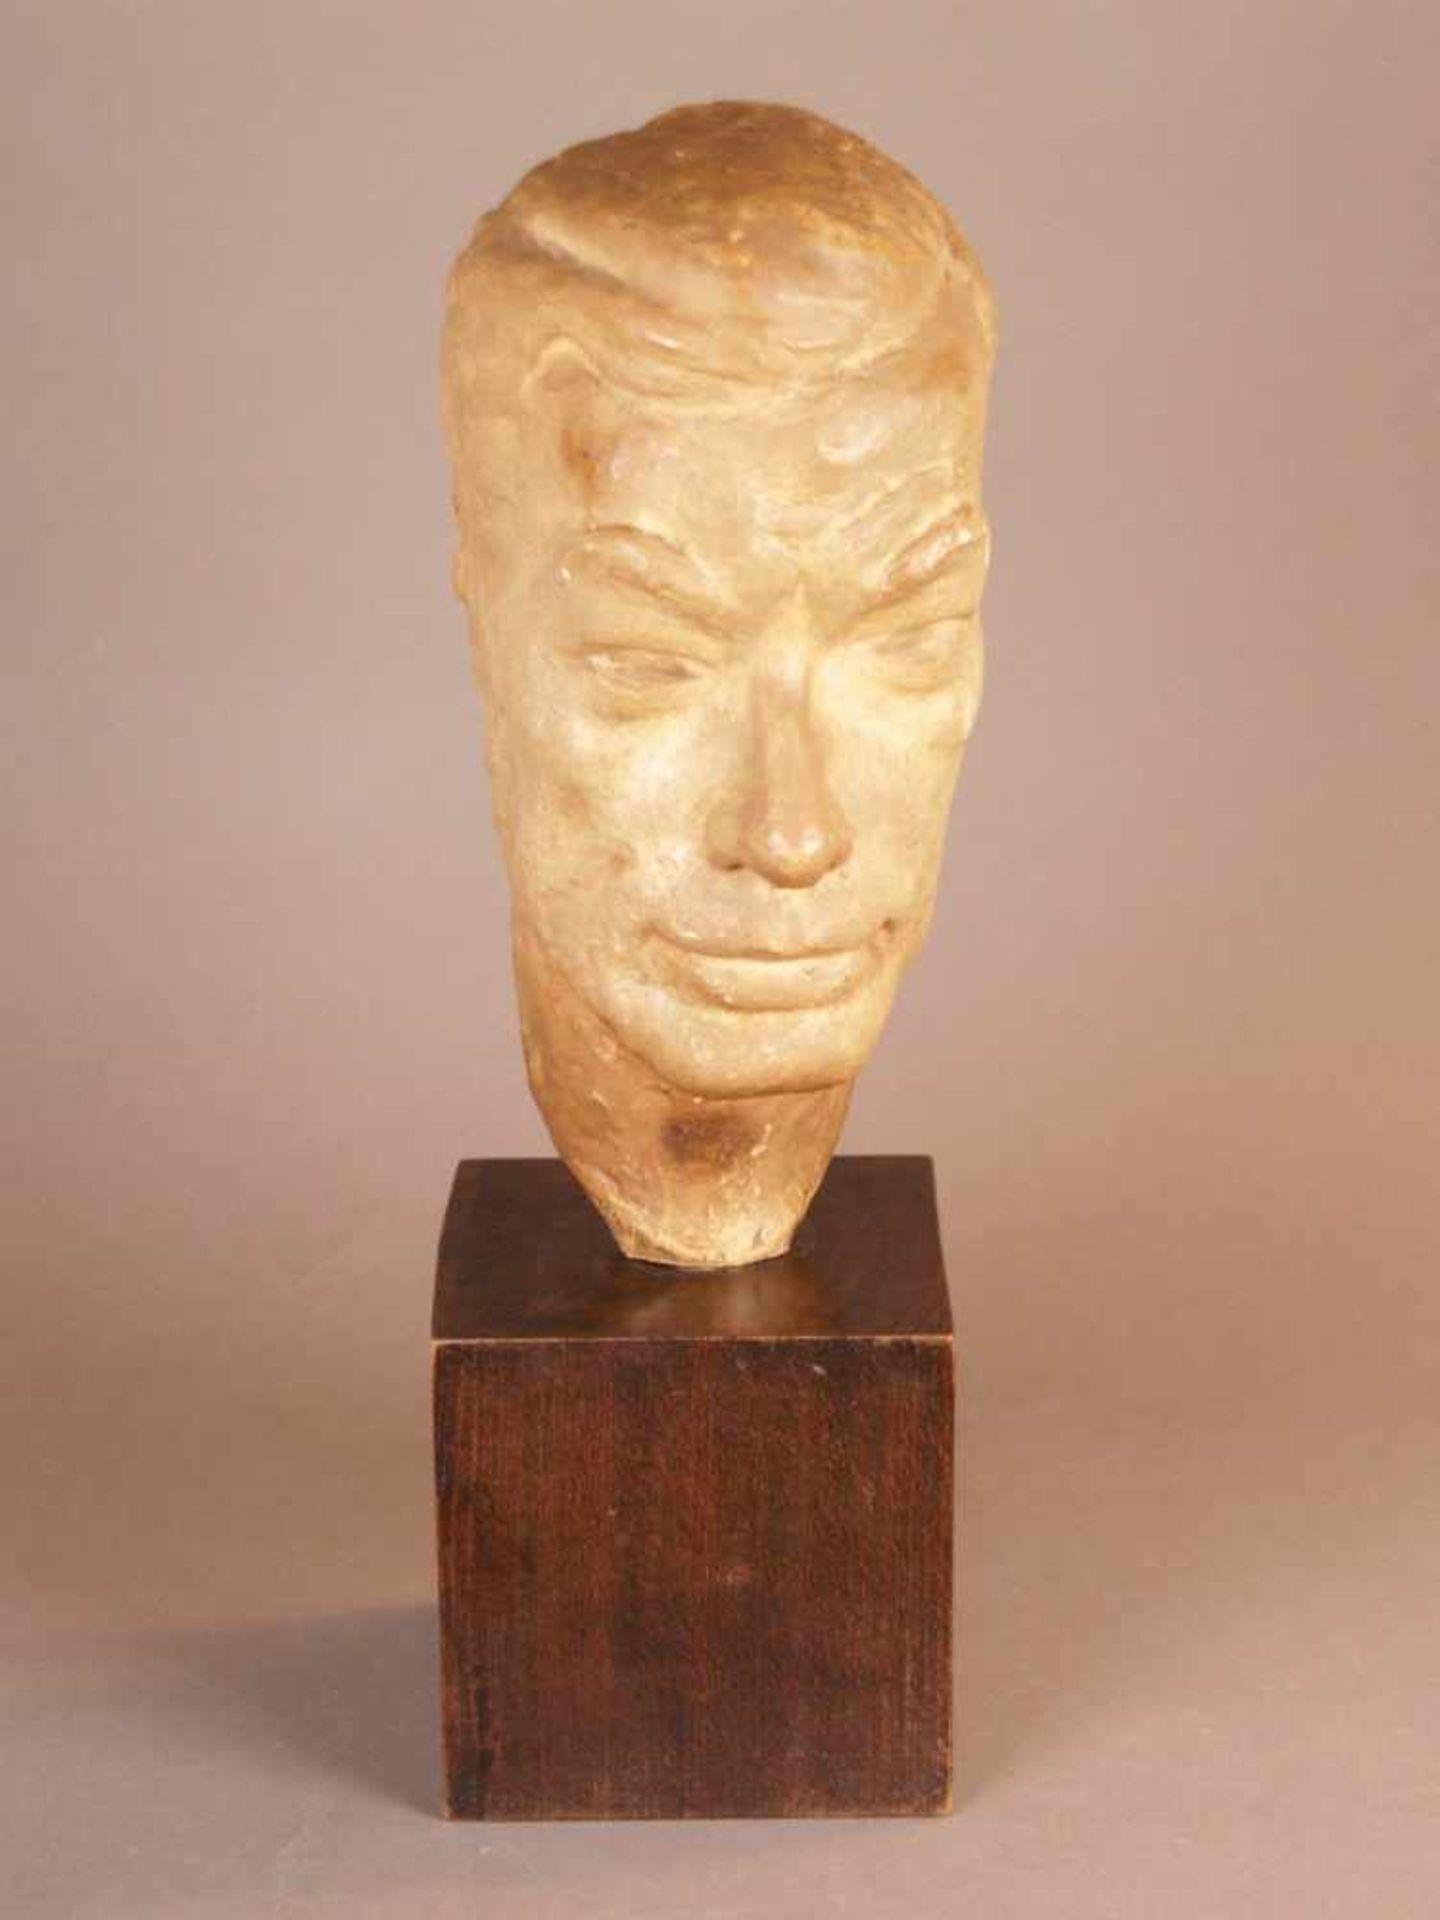 Männlicher Kopf - Keramikguss, vollplastische realistische Darstellung, auf Holzsockel montiert,